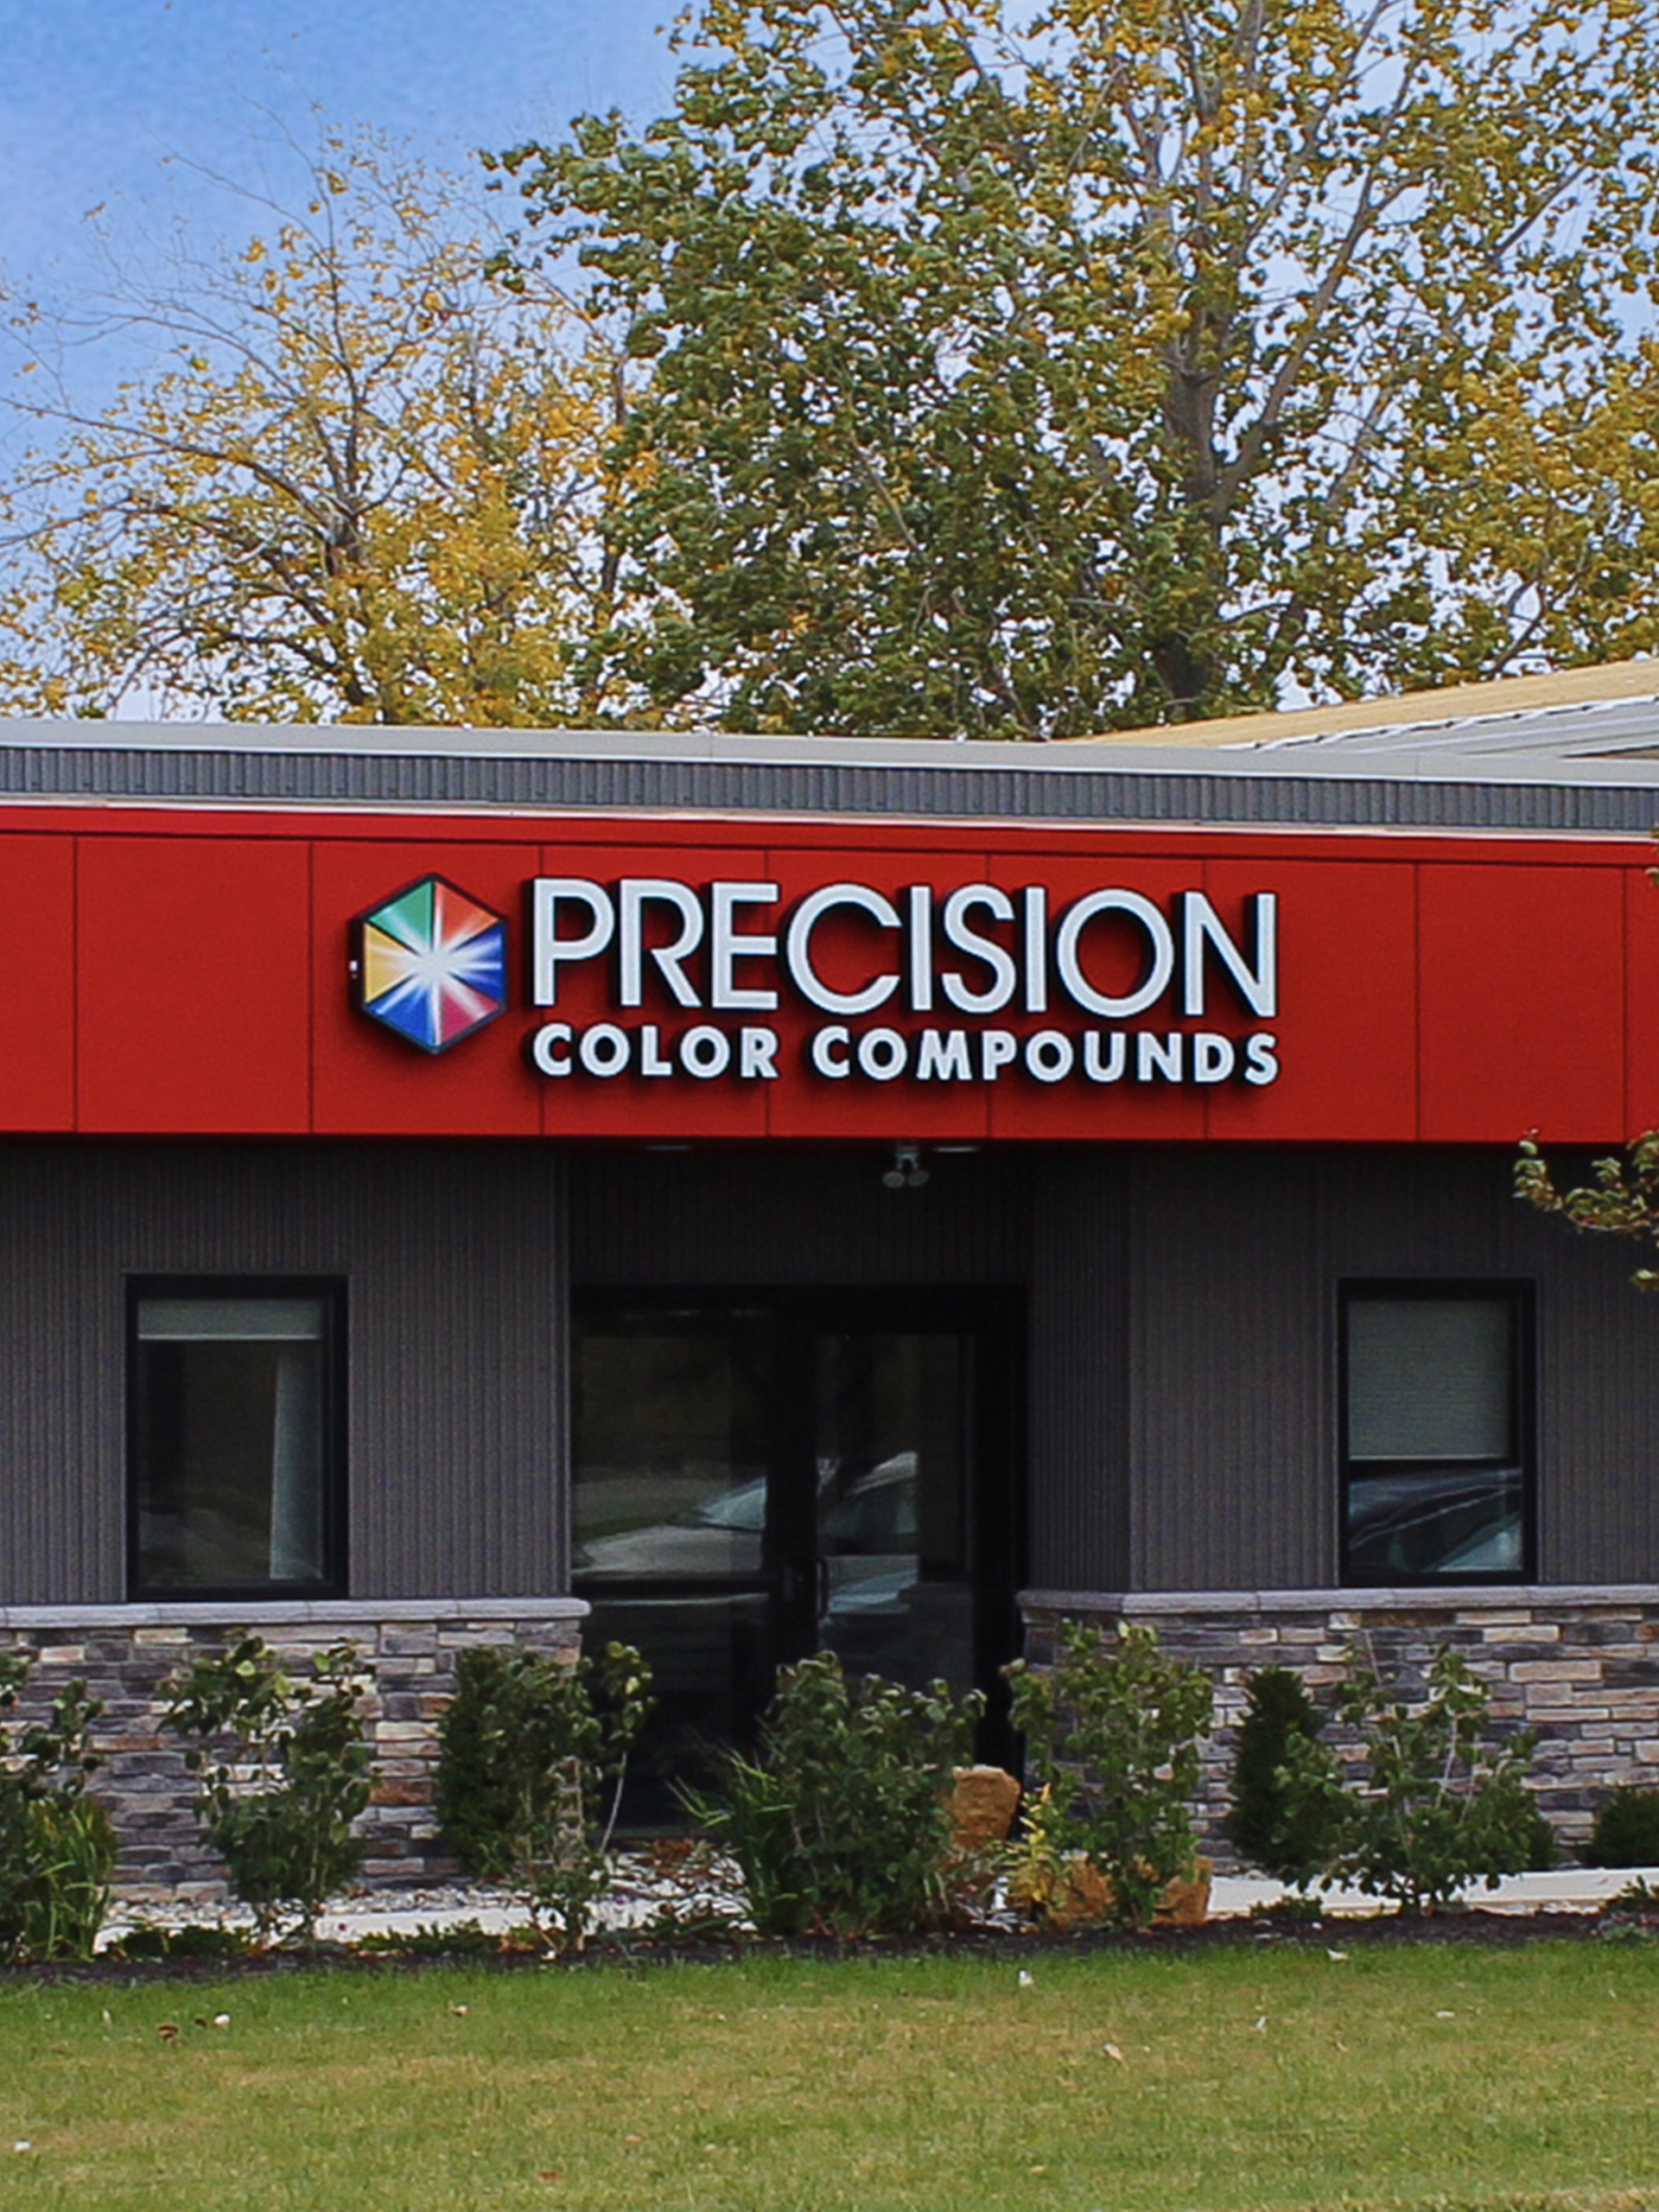 Precision Color Compounds - External Image of Building